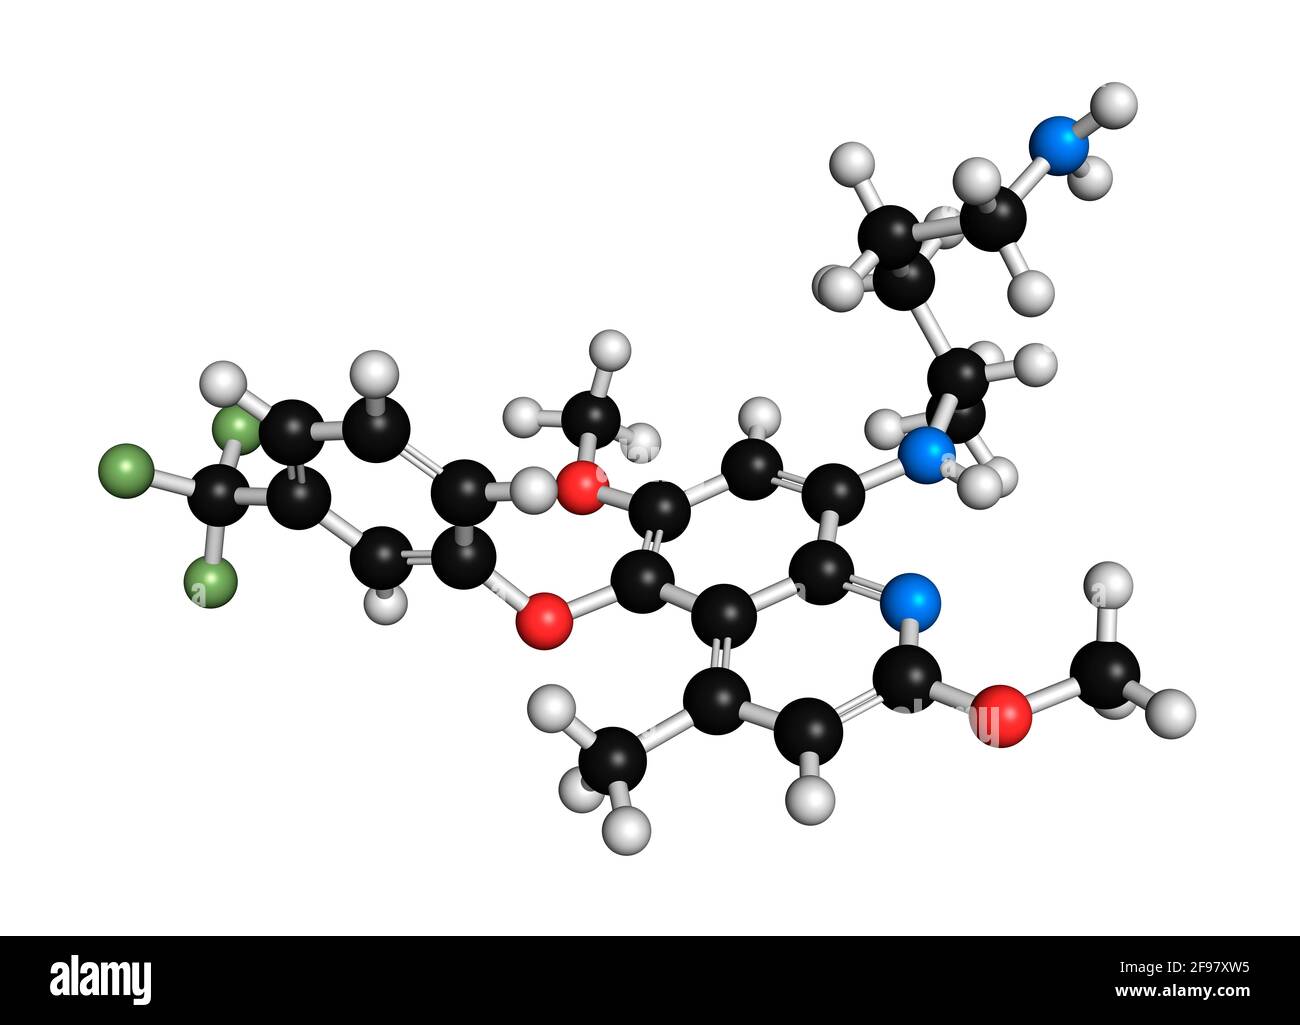 Tafenoquine malaria drug molecule, illustration Stock Photo